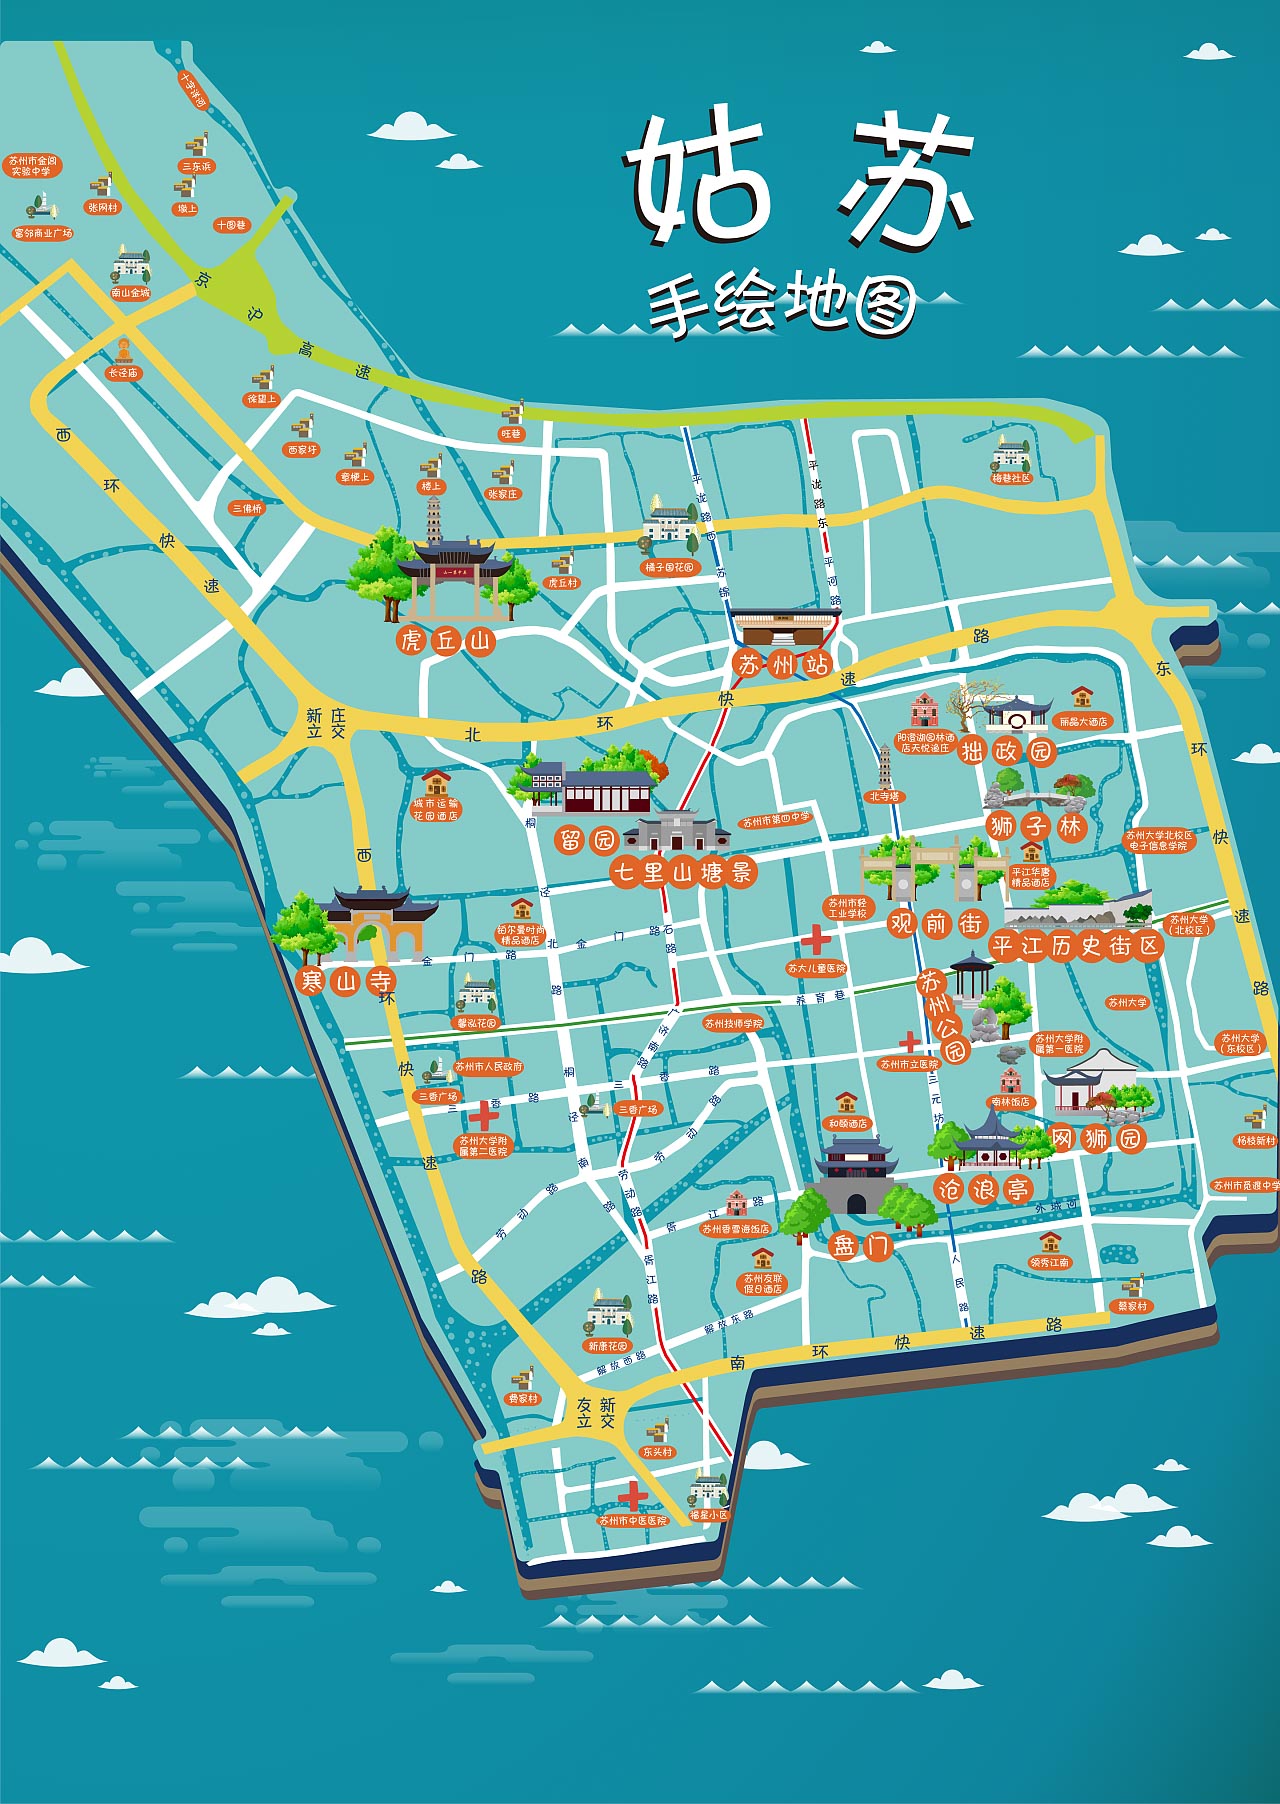 迎江手绘地图景区的文化宝藏